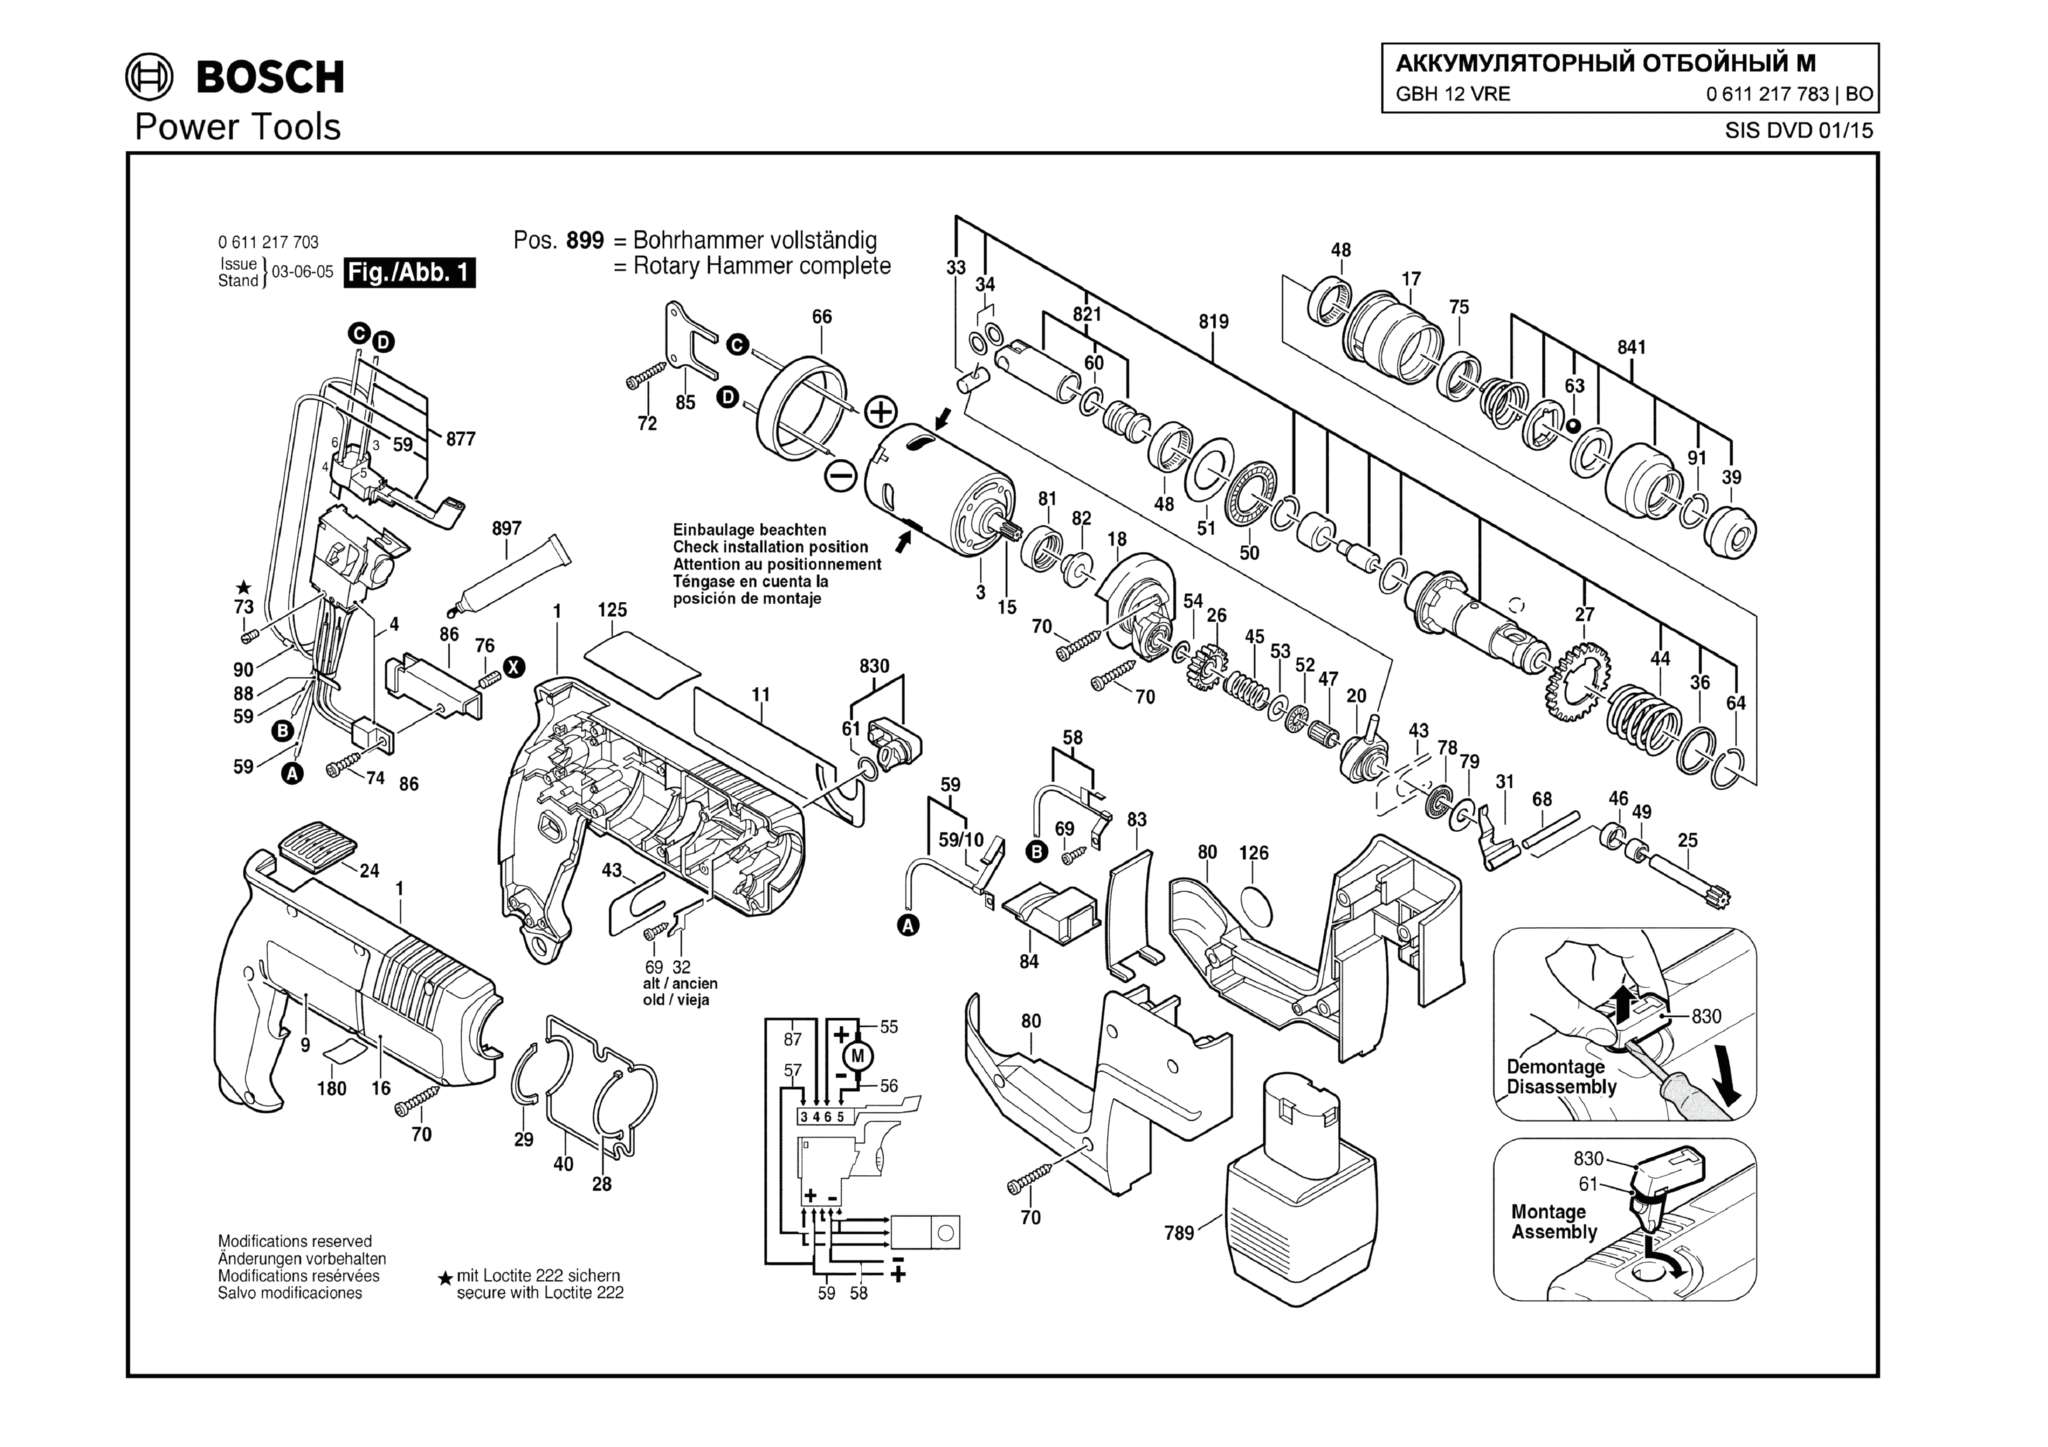 Запчасти, схема и деталировка Bosch GBH 12 VRE (ТИП 0611217783) (ЧАСТЬ 1)